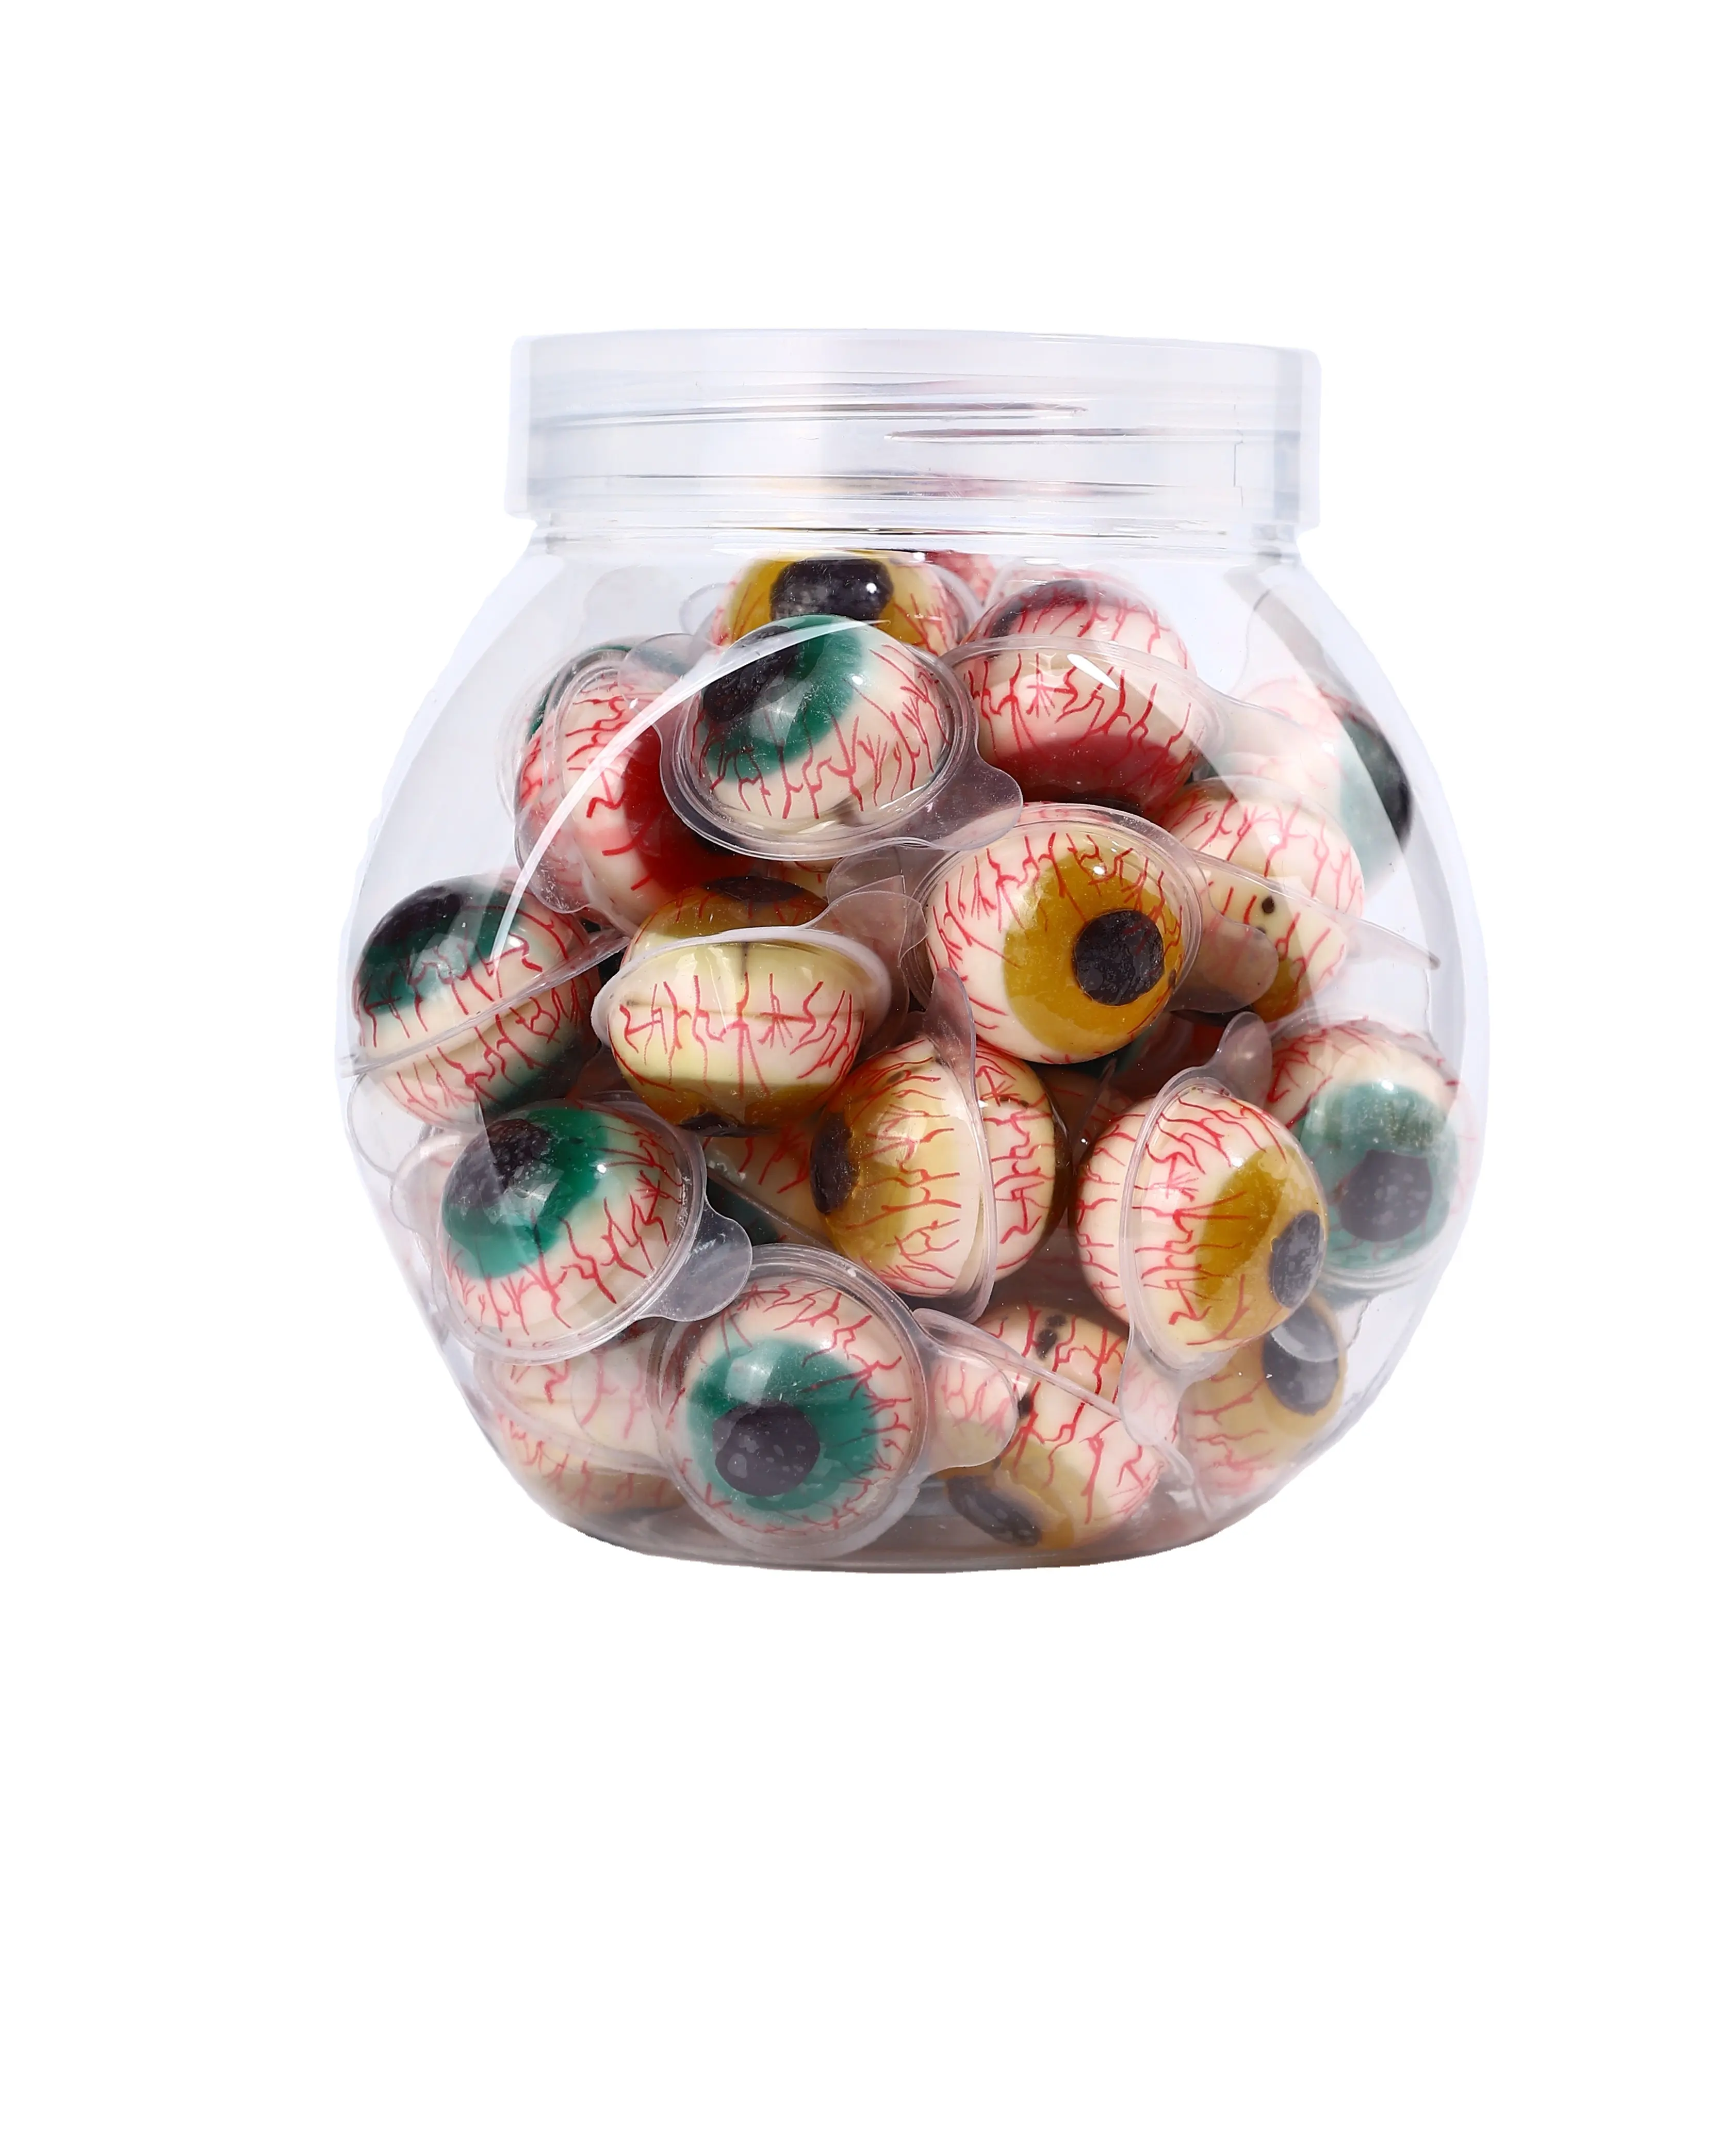 Заводская оптовая продажа халяльный шар 4D глазное яблоко конфеты желе глазные шарики для детей